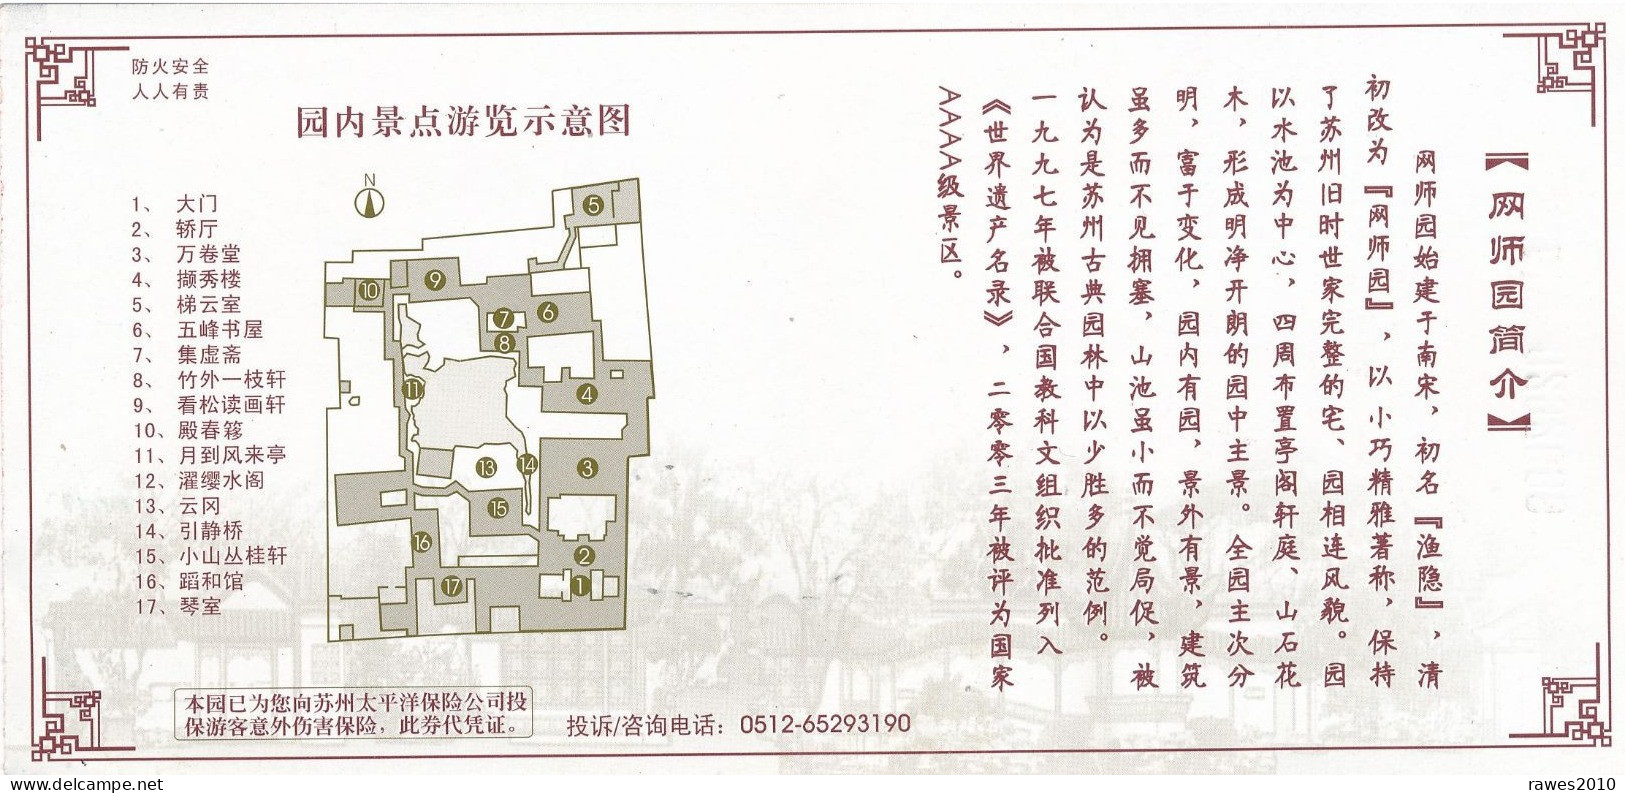 China Suzhou Eintrittskarte 2009 The Master - Of - Nets Garden UNESCO Welterbe - Biglietti D'ingresso